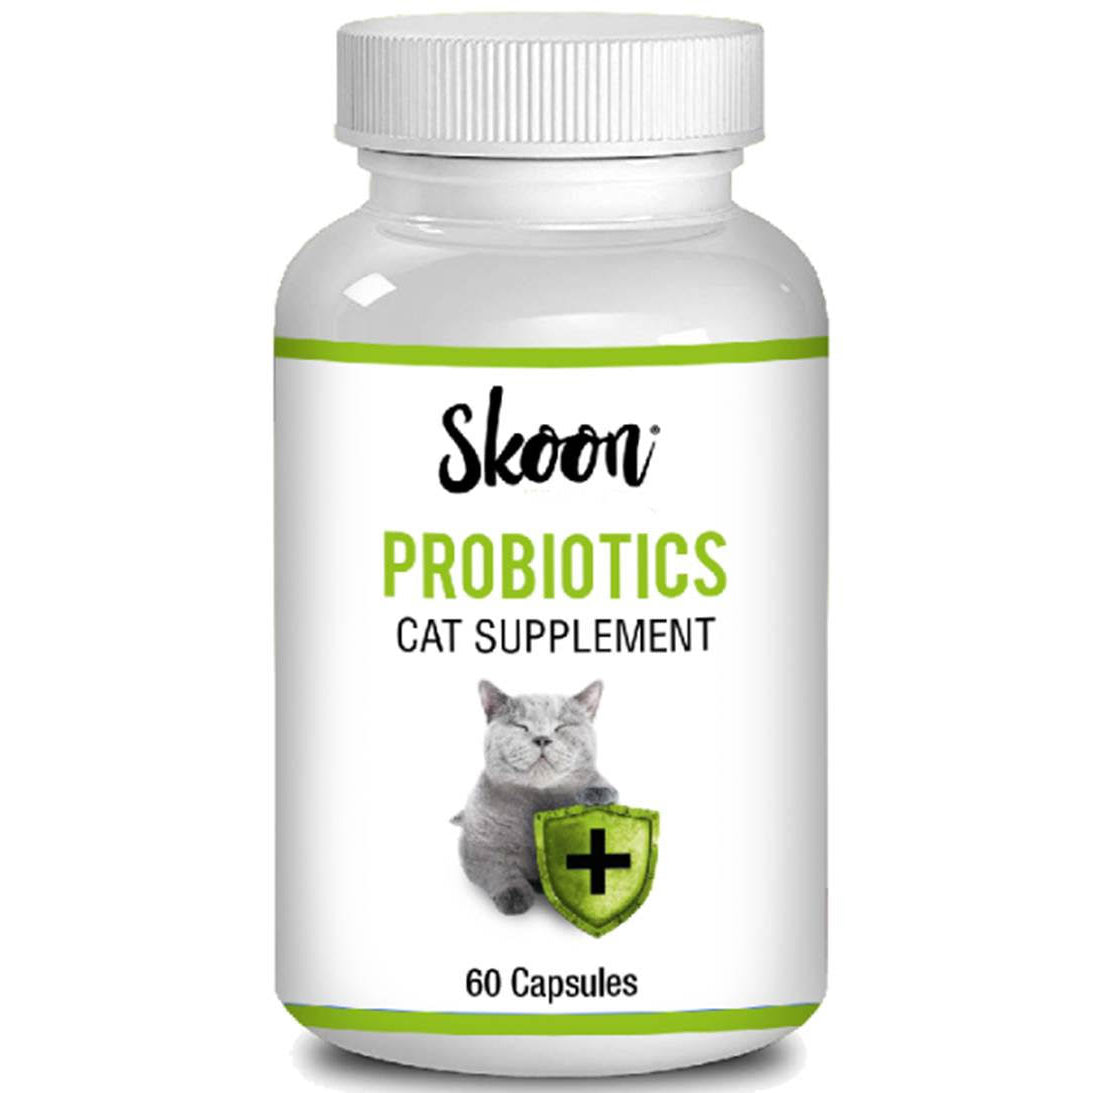 Skoon Cat Probiotics